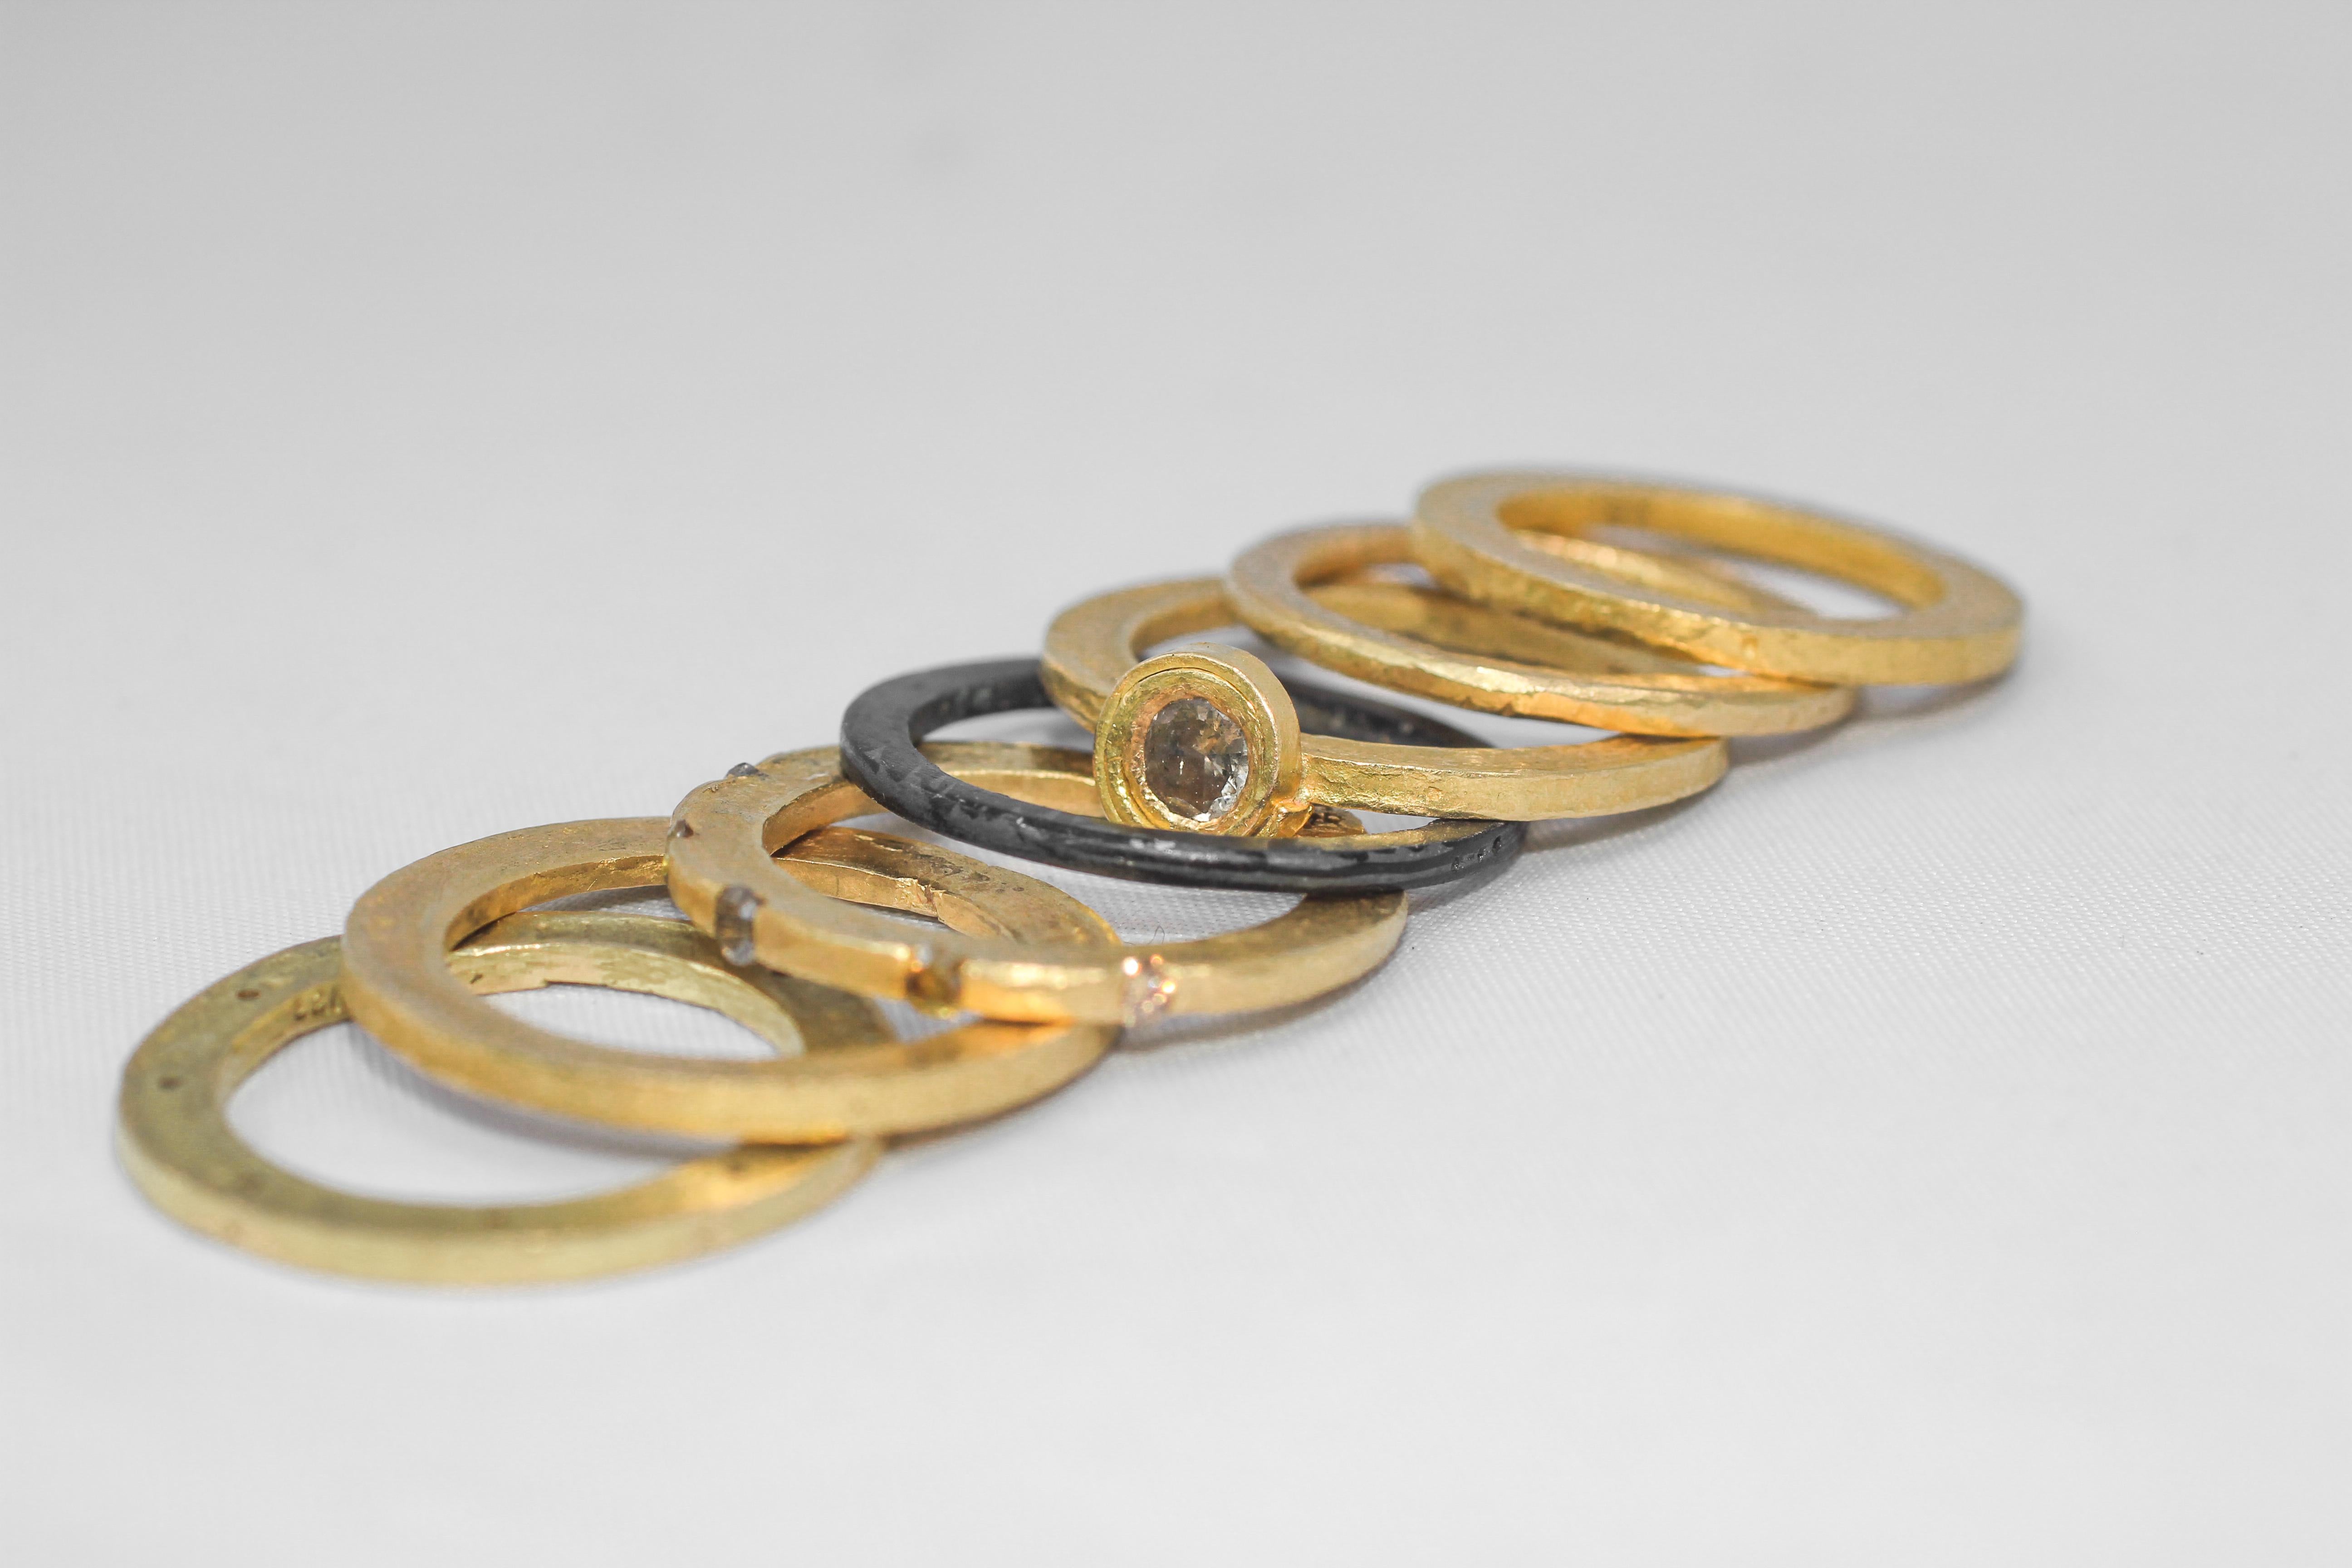 Ein substanzielles Hochzeits- oder Verlobungsband, das aus sieben Ringen aus 18- und 22-karätigem Gold besteht, die mit braunen, gebrochen weißen und gelben Fancy-Diamanten besetzt sind. Das satte Gelb des hochkarätigen Goldes wird durch ein Band